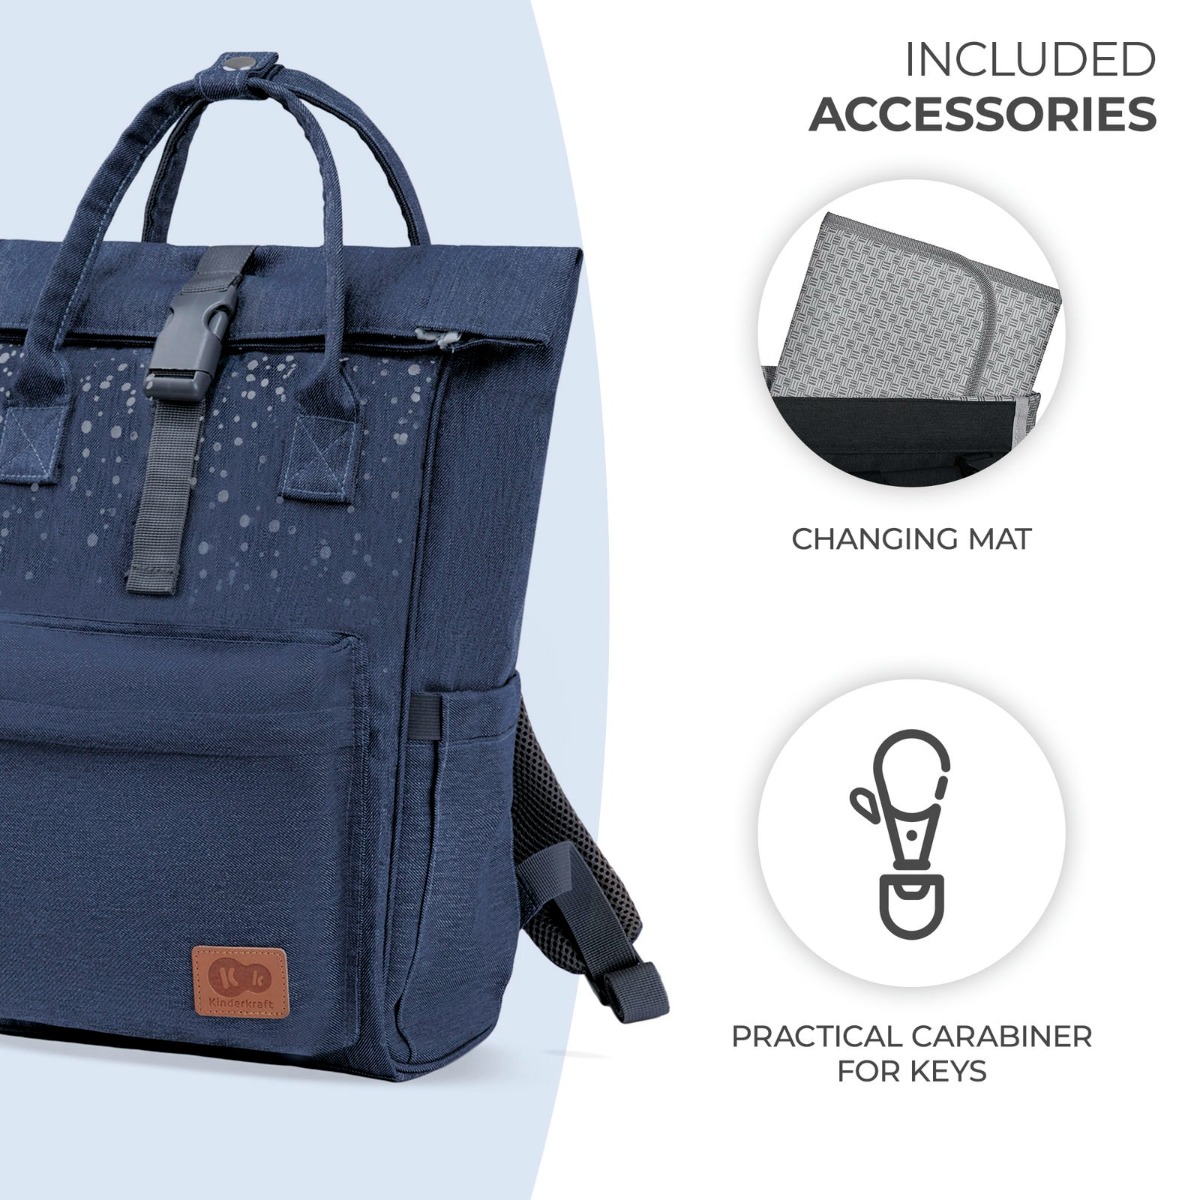 7EN-KK-moonpack-blue-included-accessories